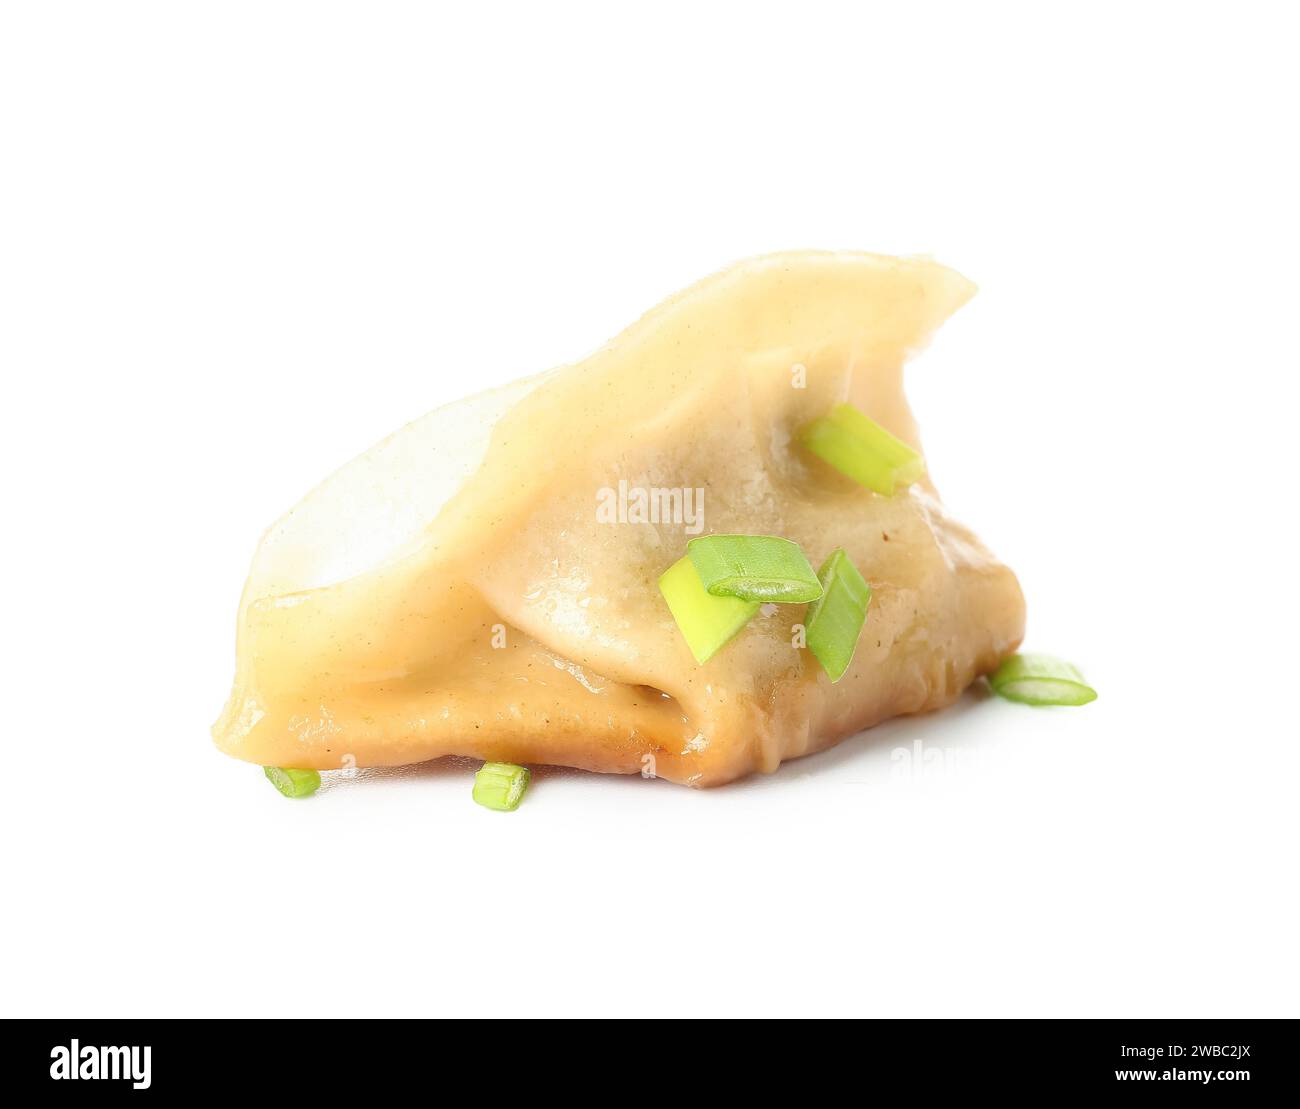 Savoureuse jiaozi chinoise avec oignon vert sur fond blanc Banque D'Images